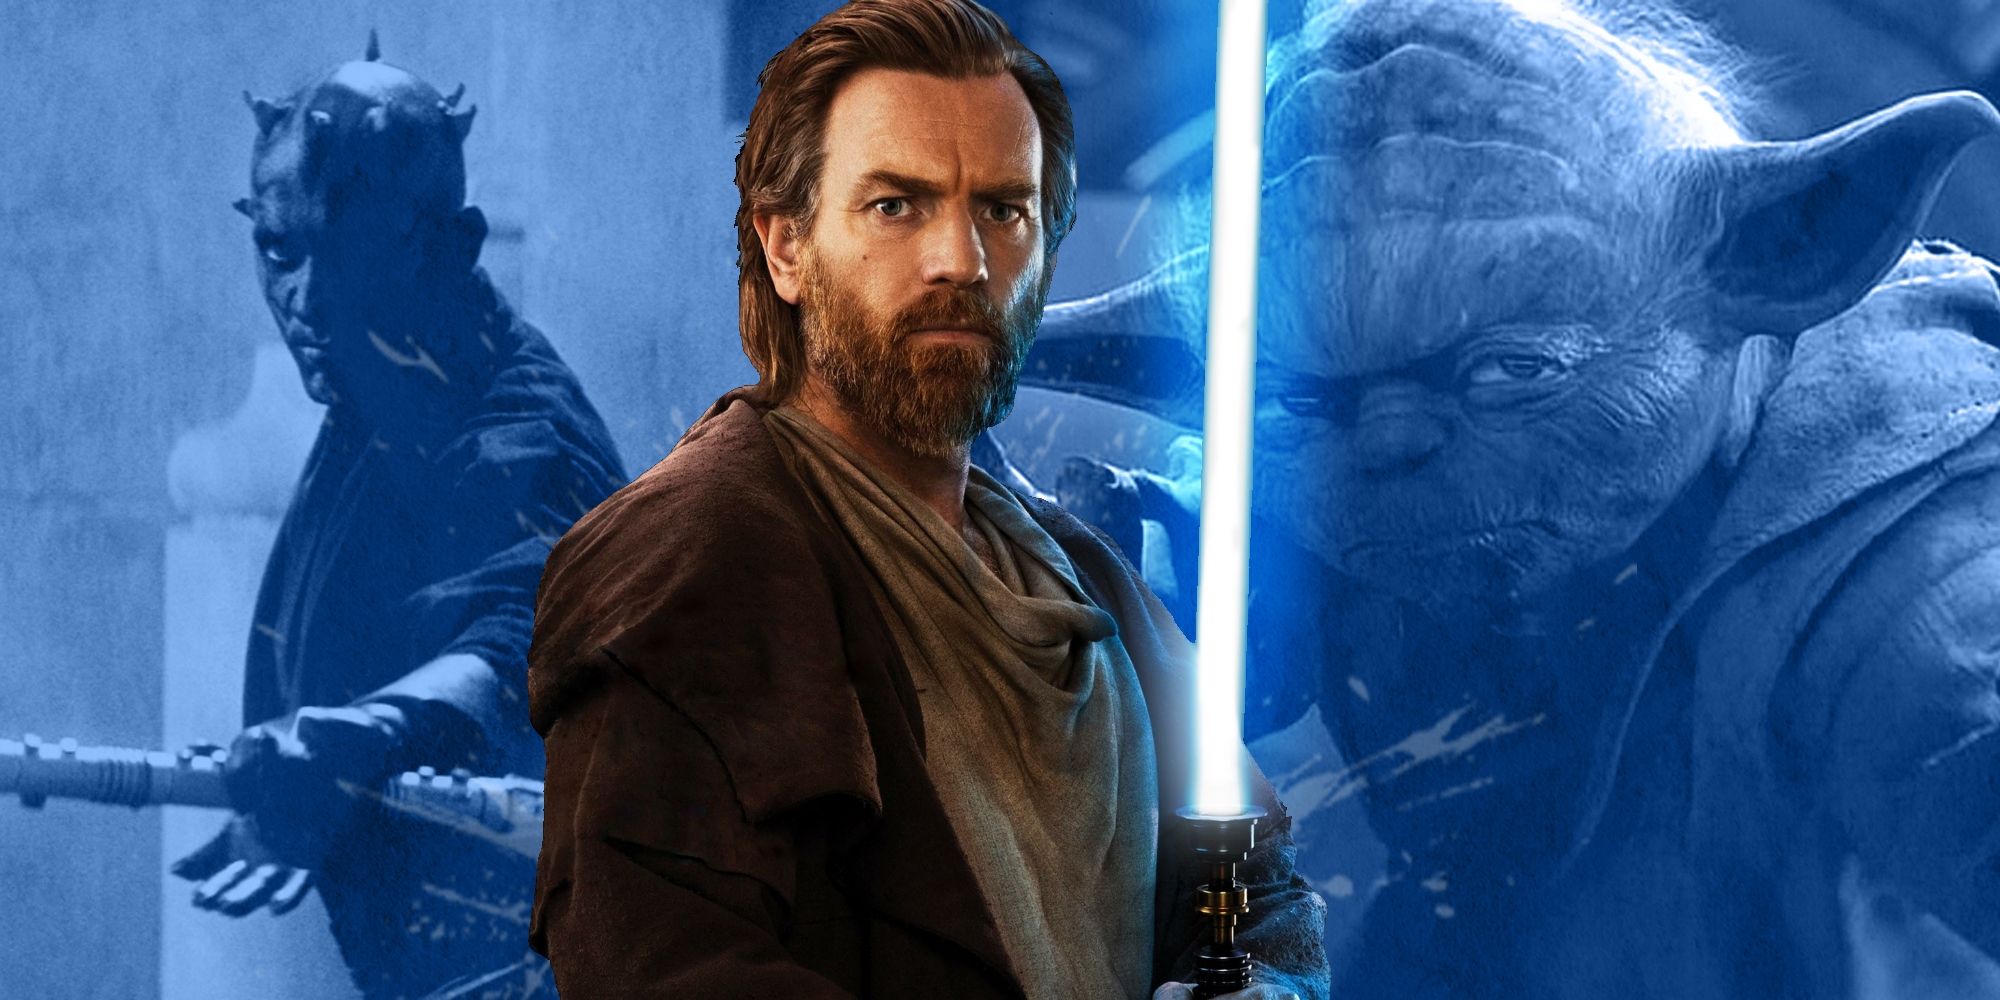 'Obi-Wan Kenobi's Original Ending Makes Way More Sense For the Character